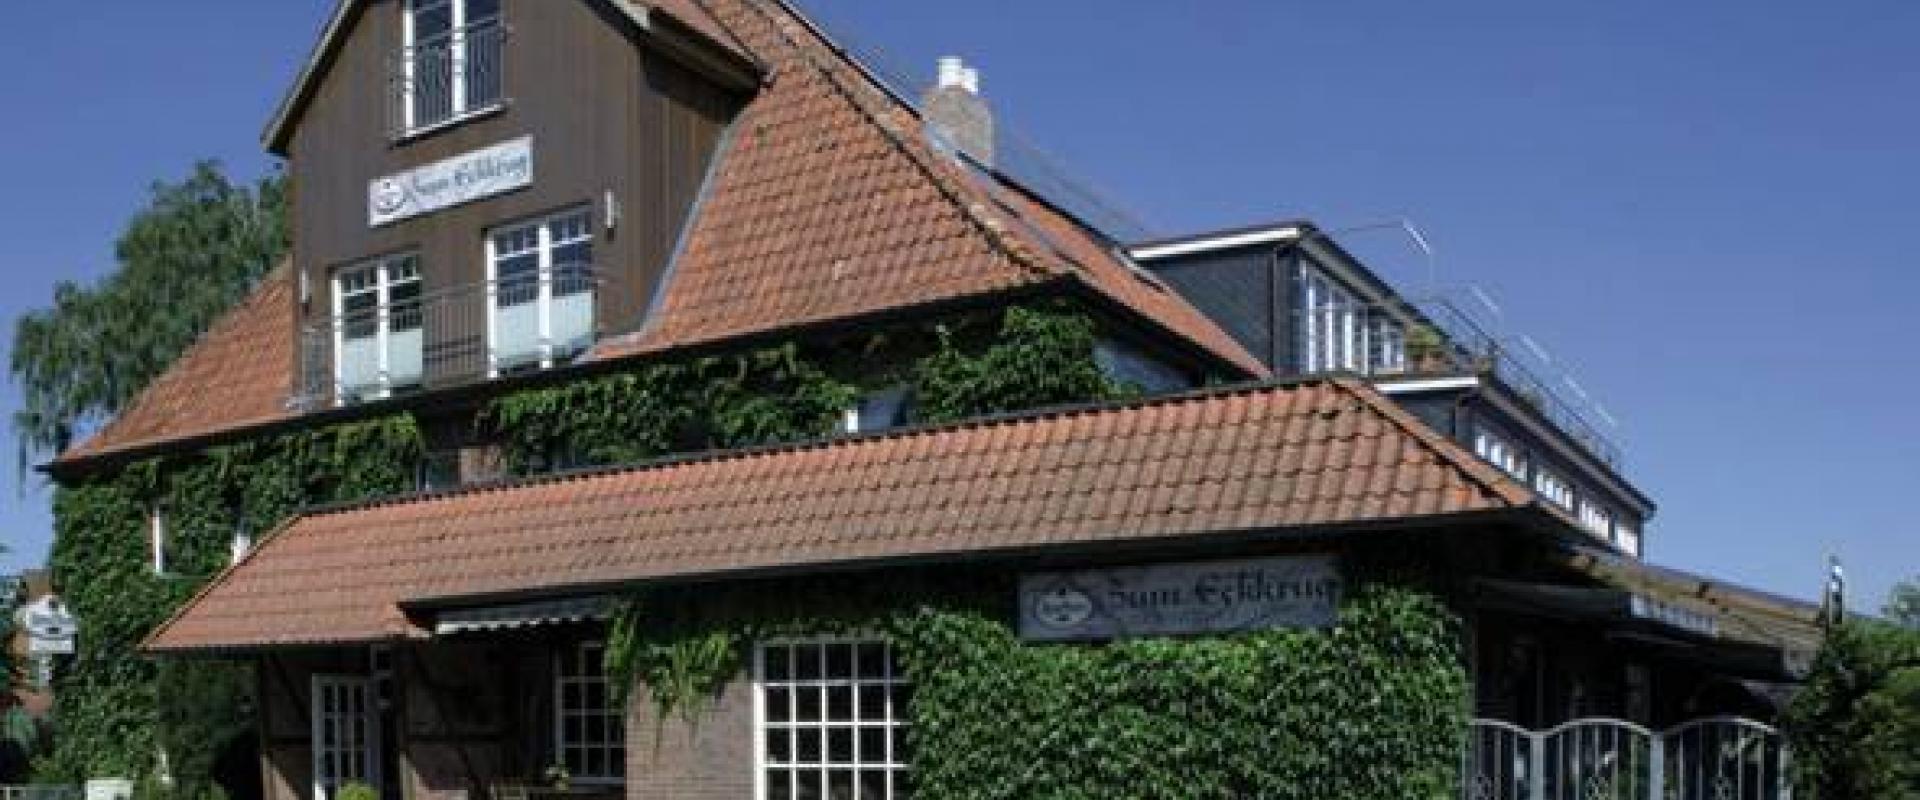 14065 Biker Hotel Zum Eckkrug in Schleswig-Holstein.jpg